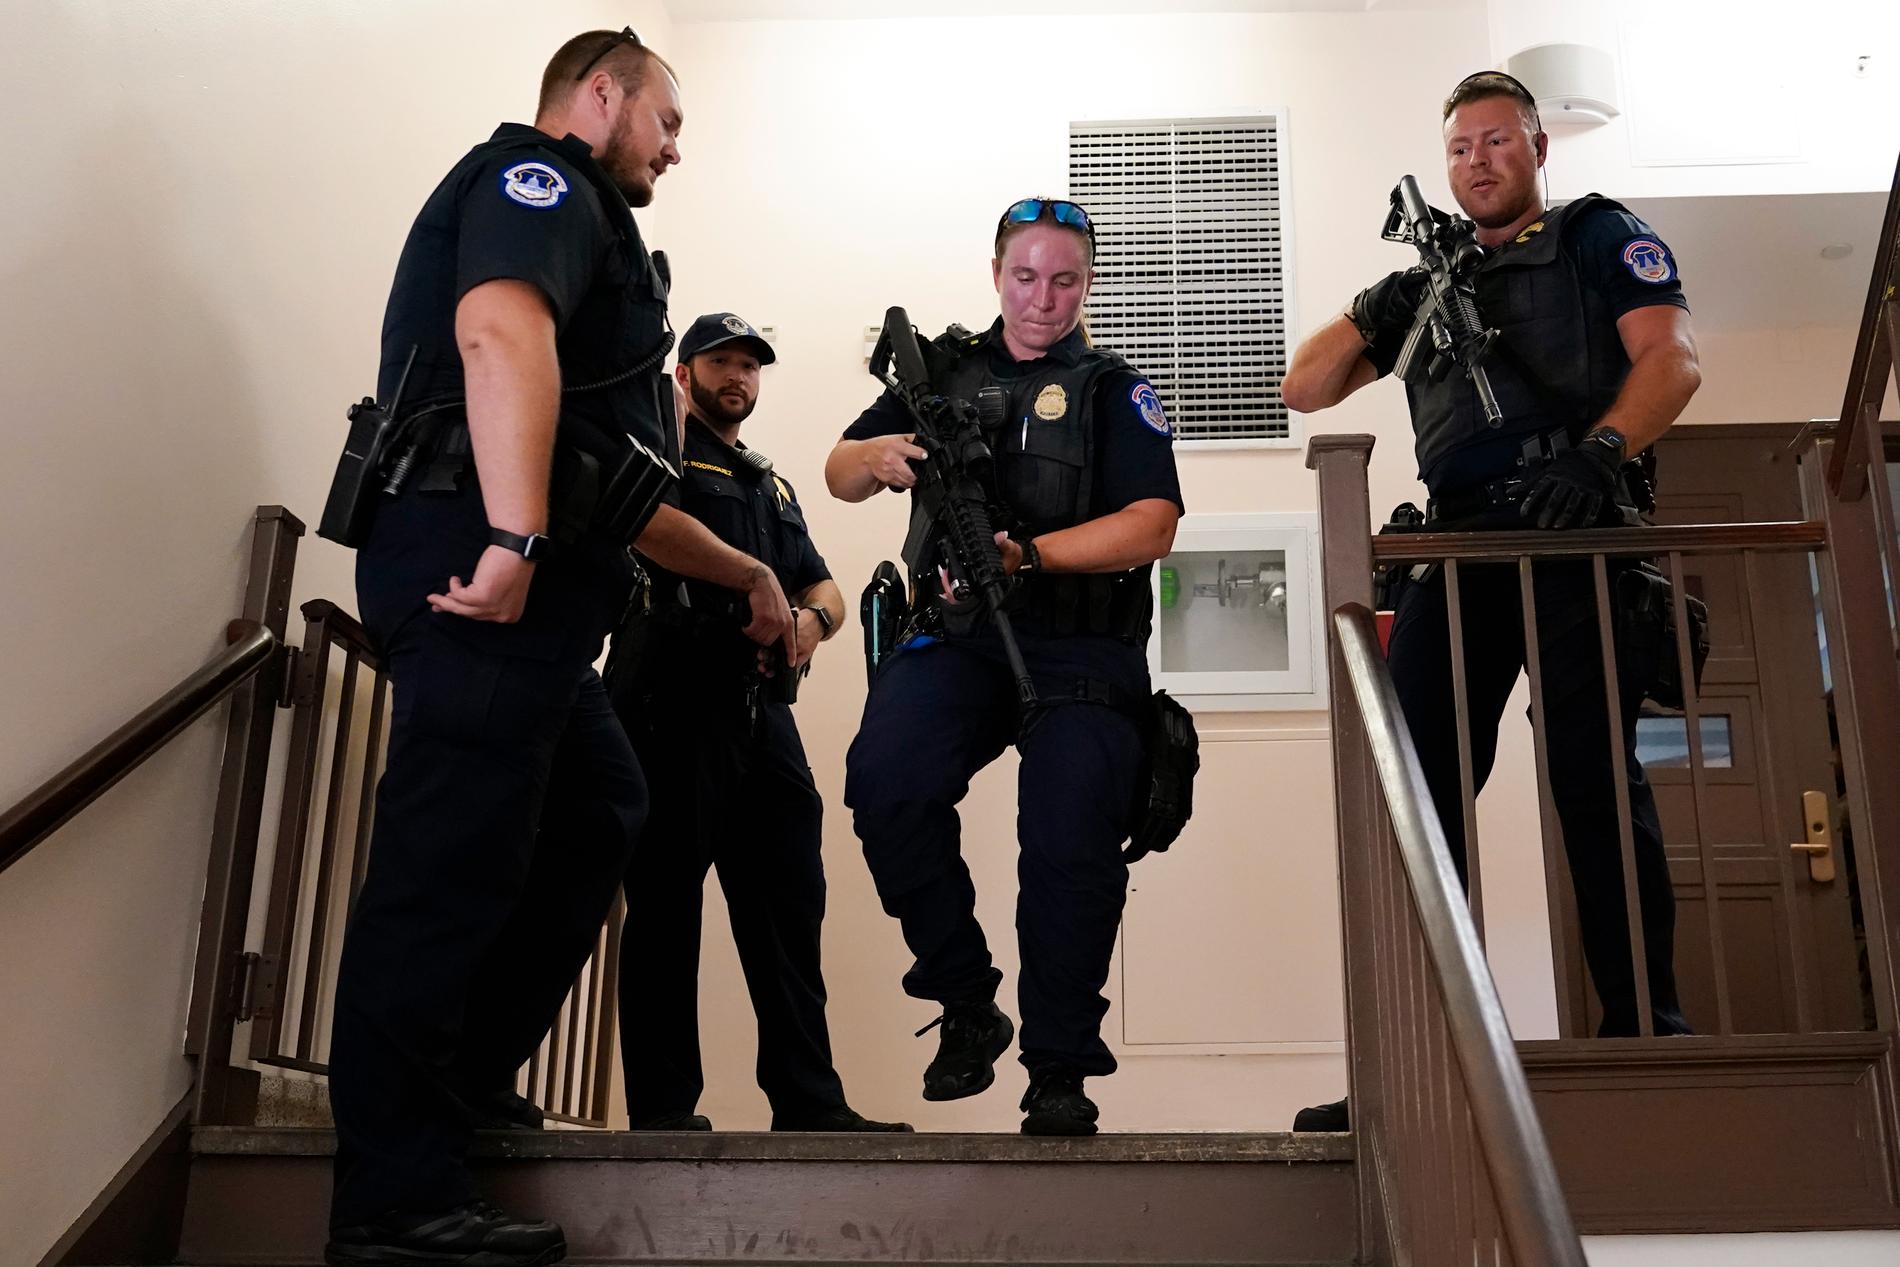 Fikk melding om skyting ved Senatet: Politiet sier det trolig er falsk alarm